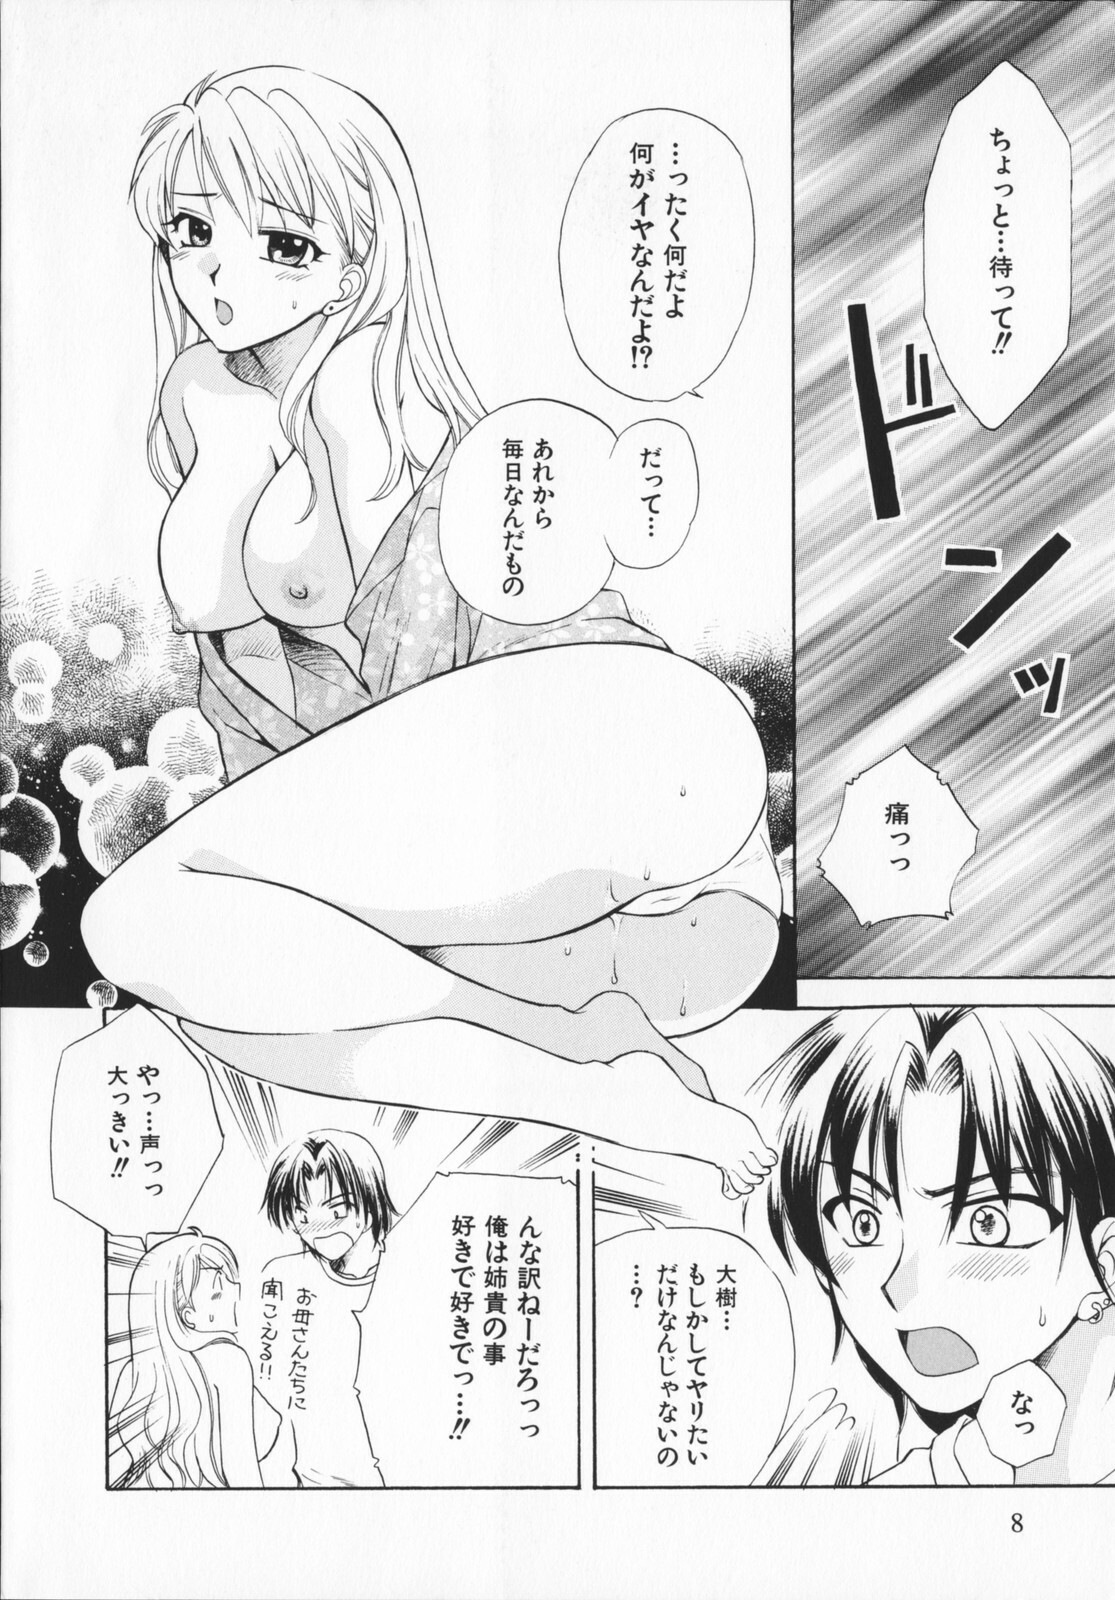 [Ureshino Megumi]Genkaiharetsu (LIMIT EXPLOSION) page 7 full